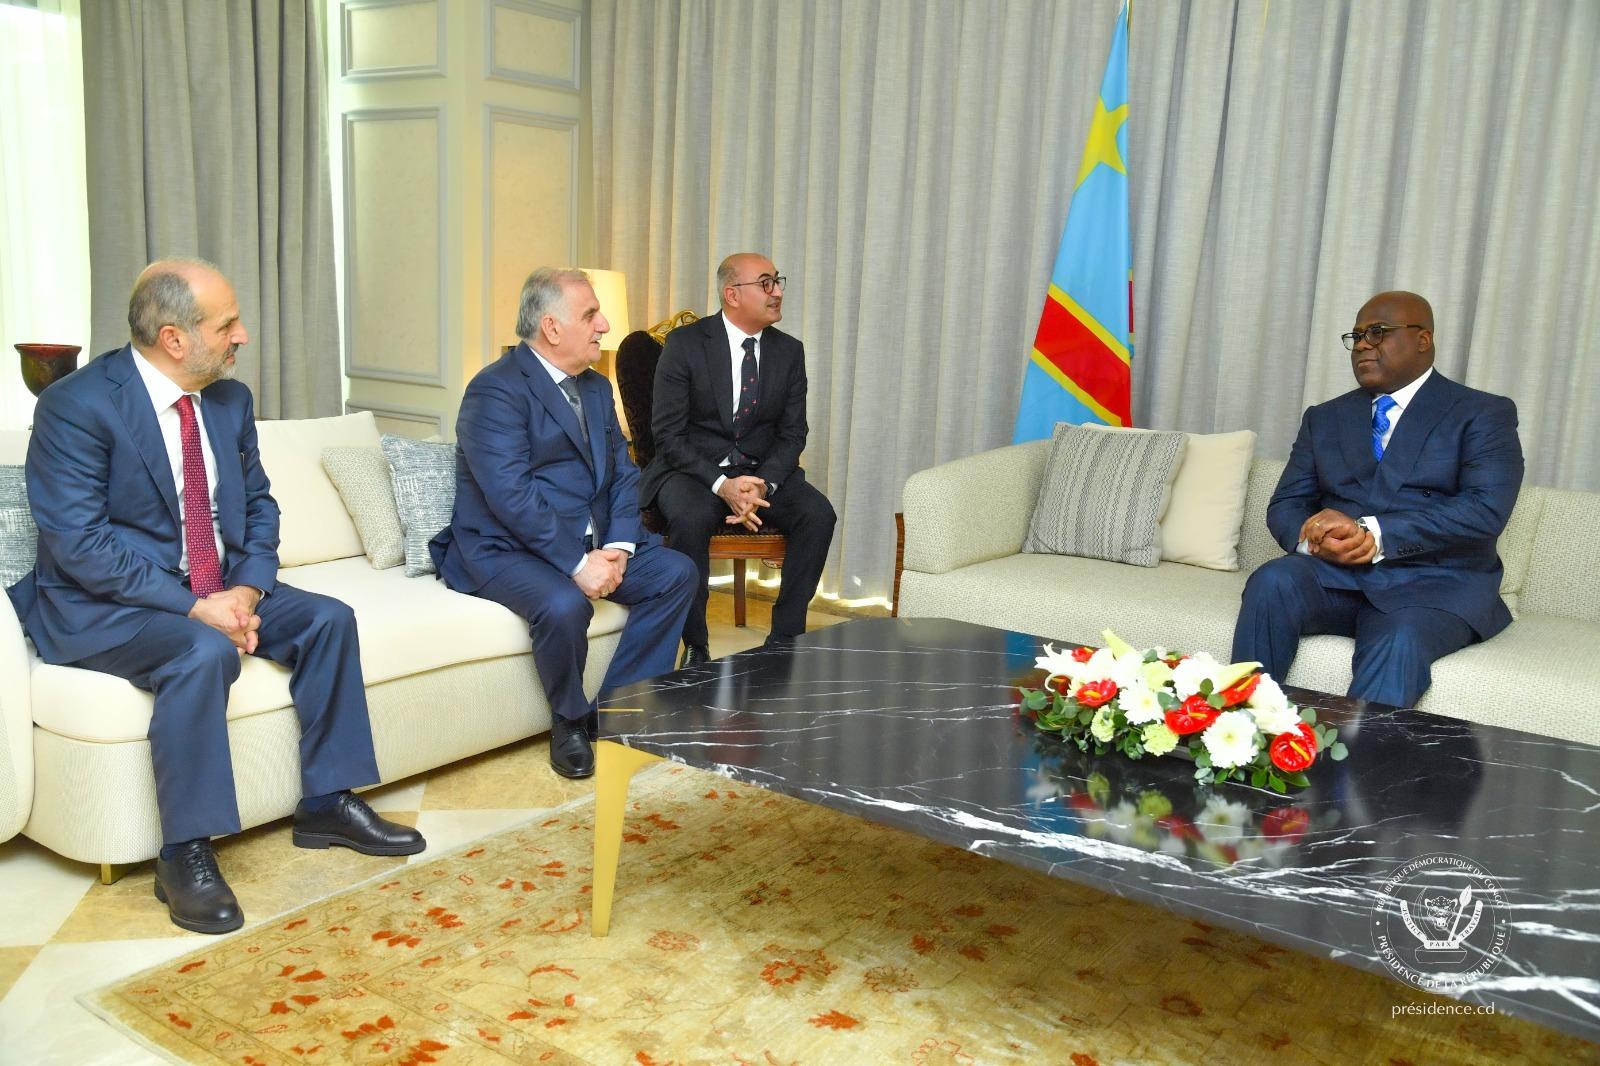 Le président congolais Tshisekedi a échangé avec le Groupe turc Albayrak sur le projet d’assainissement de la capitale Kinshasa